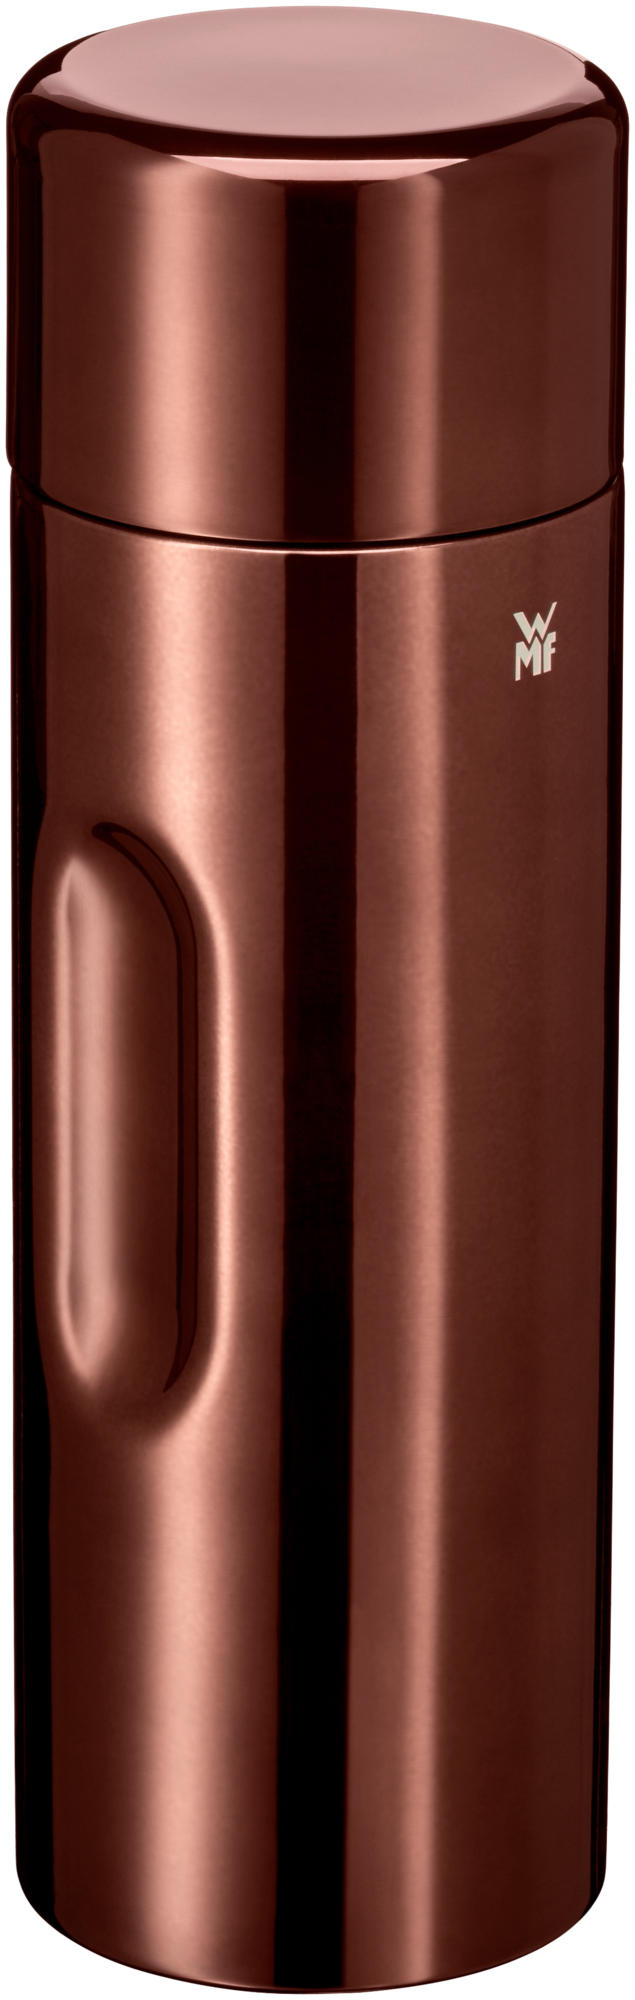 MOTION Vacuum flask 0.75 l vintage copper